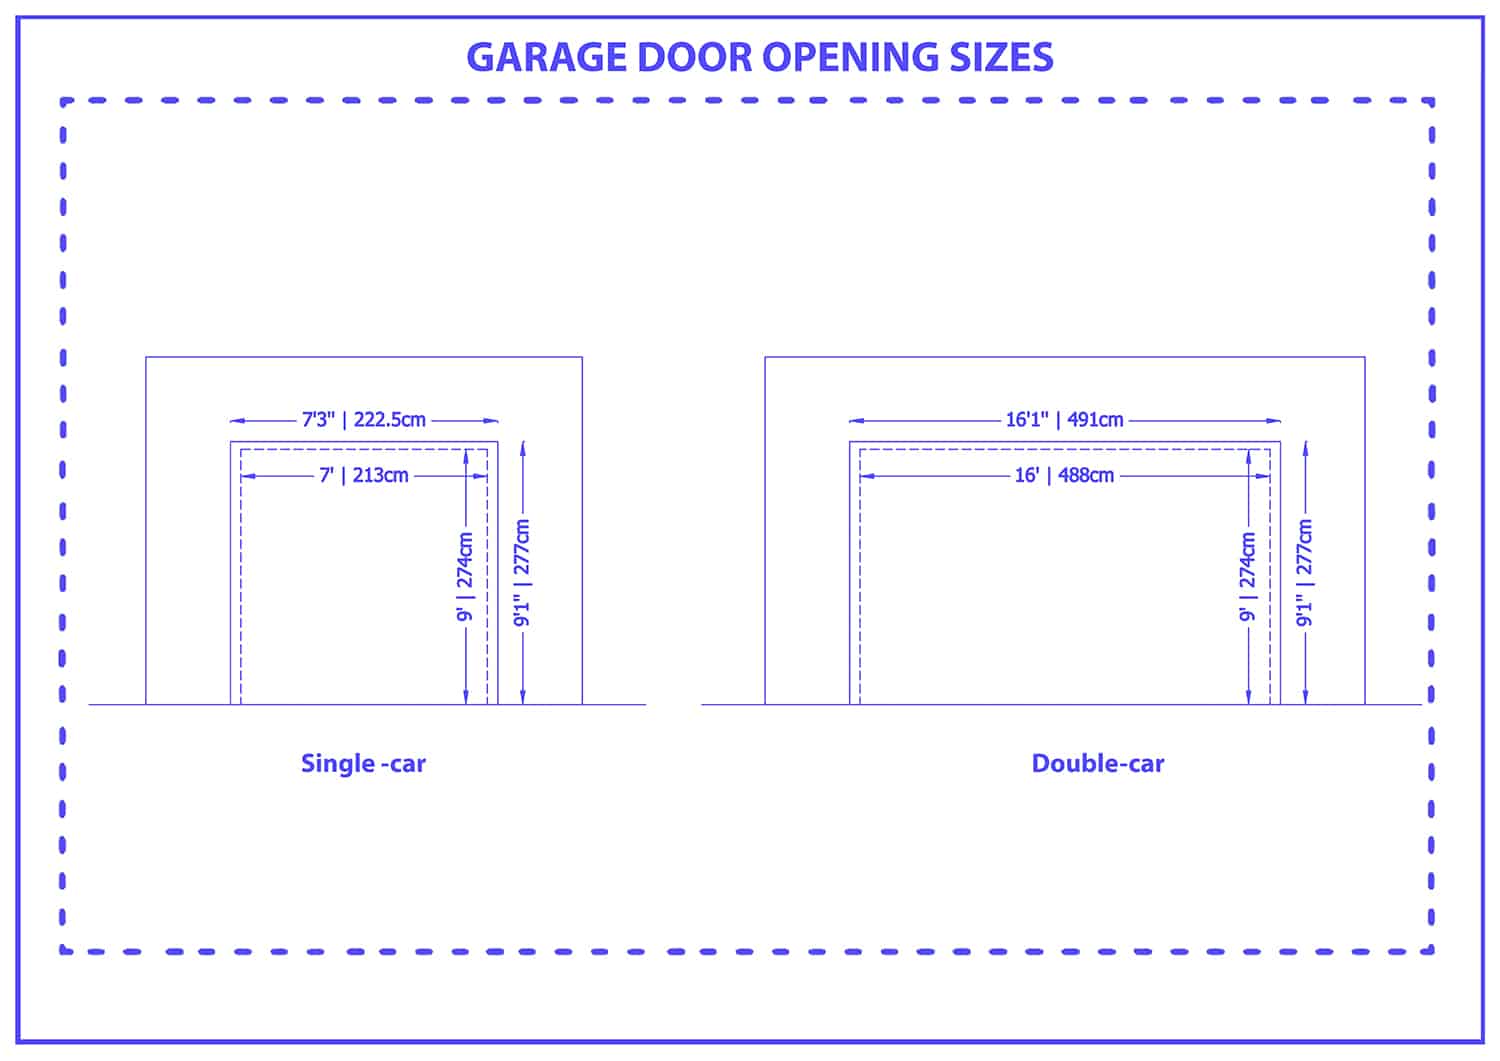 Garage door opening size